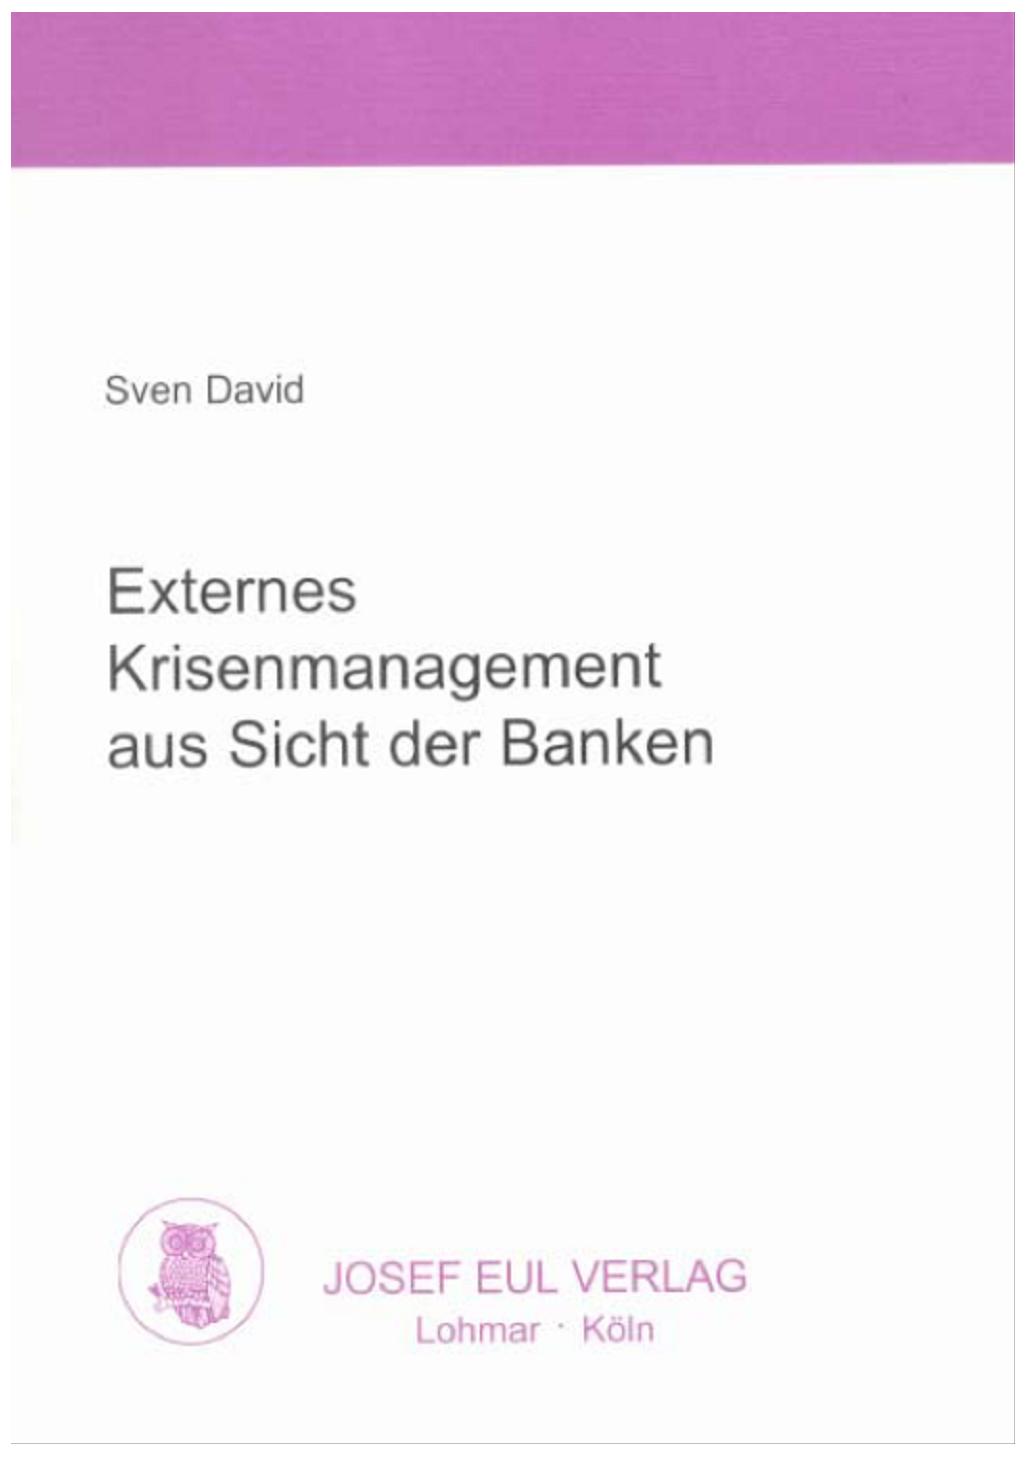 Buchcover "Externes Krisenmanagement aus Sicht der Banken" (Dr. Sven David, 2001)